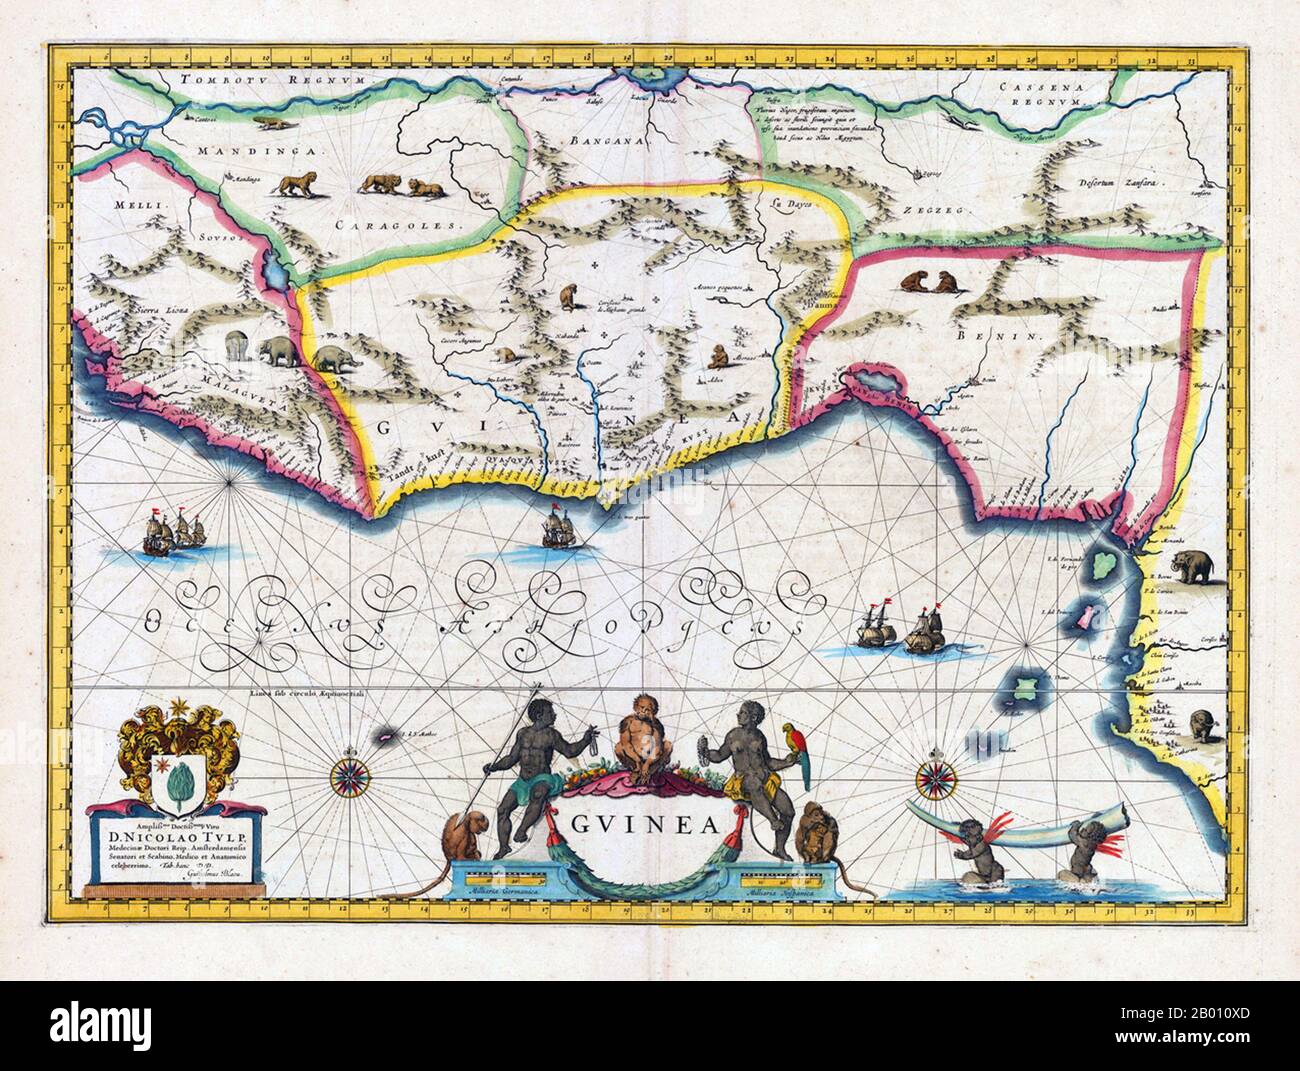 Afrika: Karte von Guinea und den umliegenden Regionen. Im Osten ist das Königreich Benin angegeben. Karte von Willem Blaeu (1571-1638) & Joan Bleau (1596-1673), Amsterdam, 1640-1650. Stockfoto